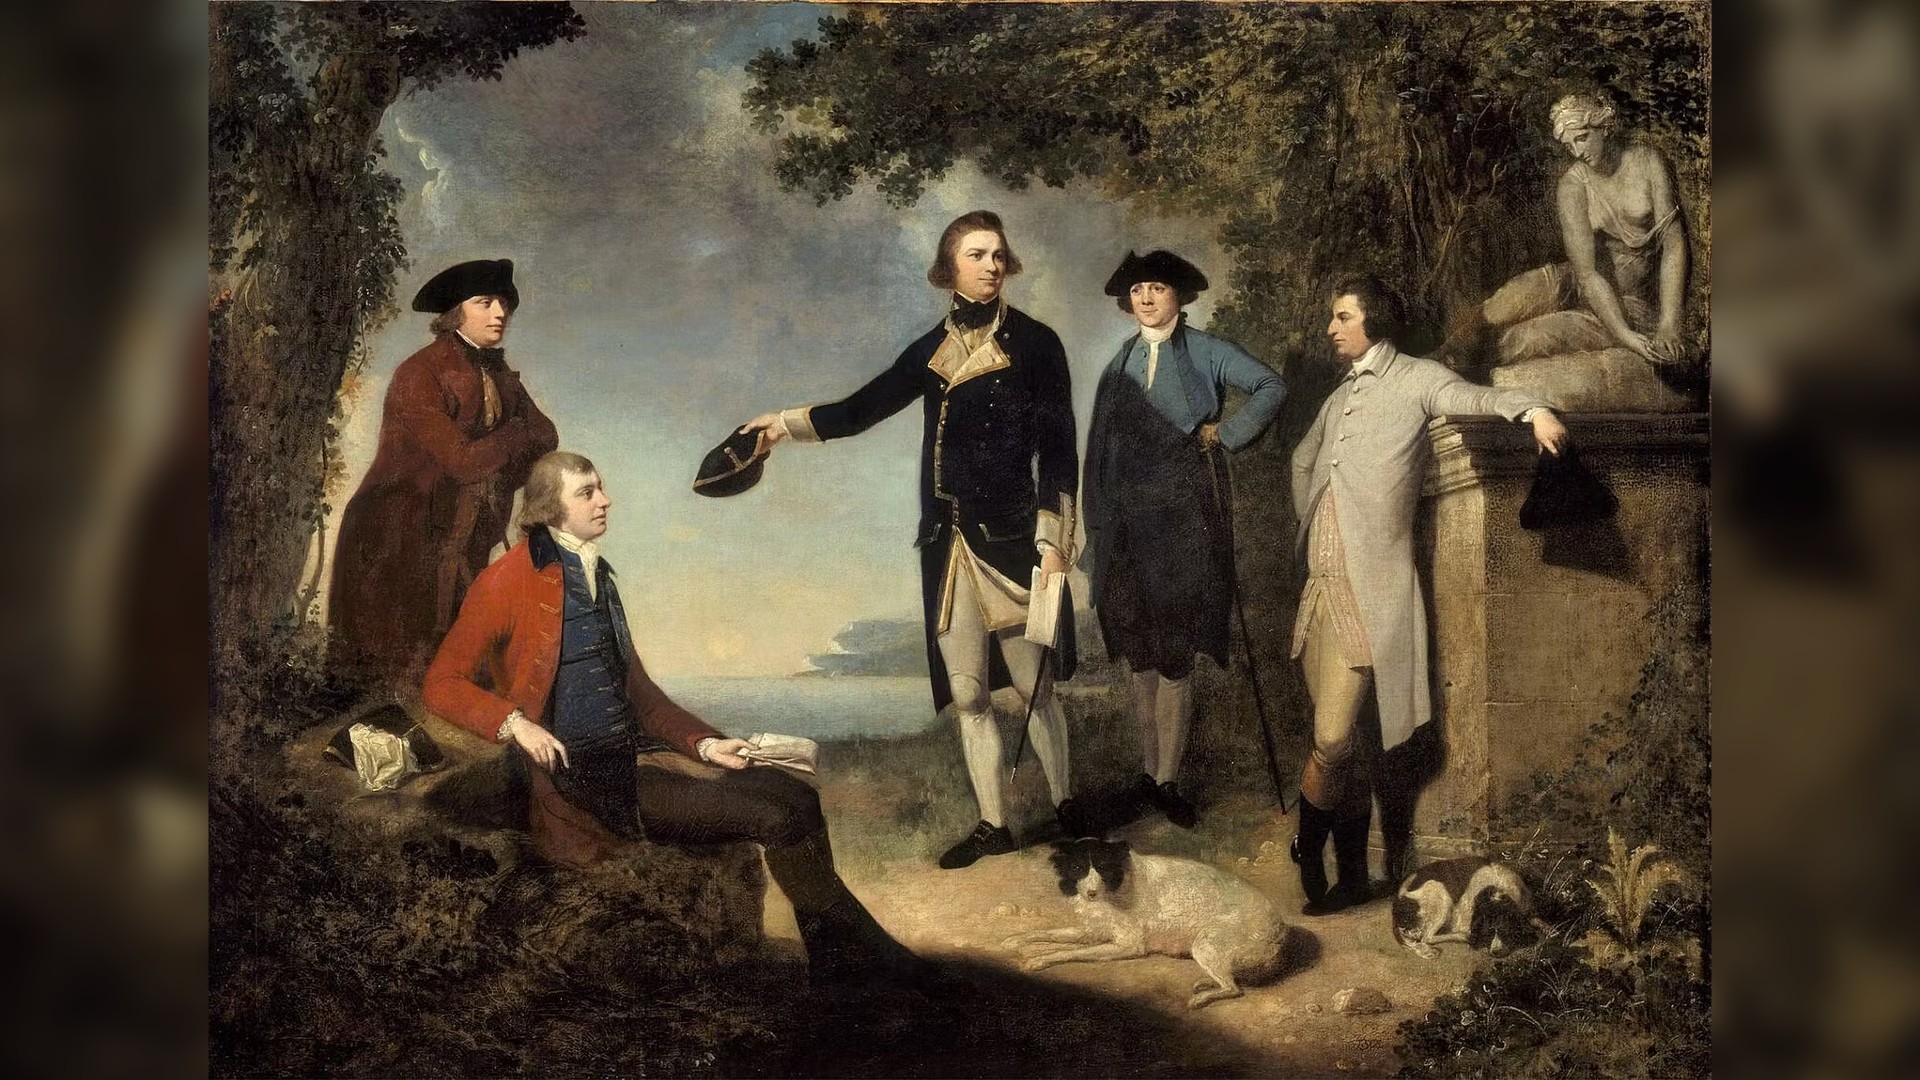 Sebuah lukisan yang memperlihatkan lima pria, dua anjing, dan patung seorang wanita berdiri di tempat terbuka dekat pantai laut.  Pria tengah, James Cook, mengangkat topinya.